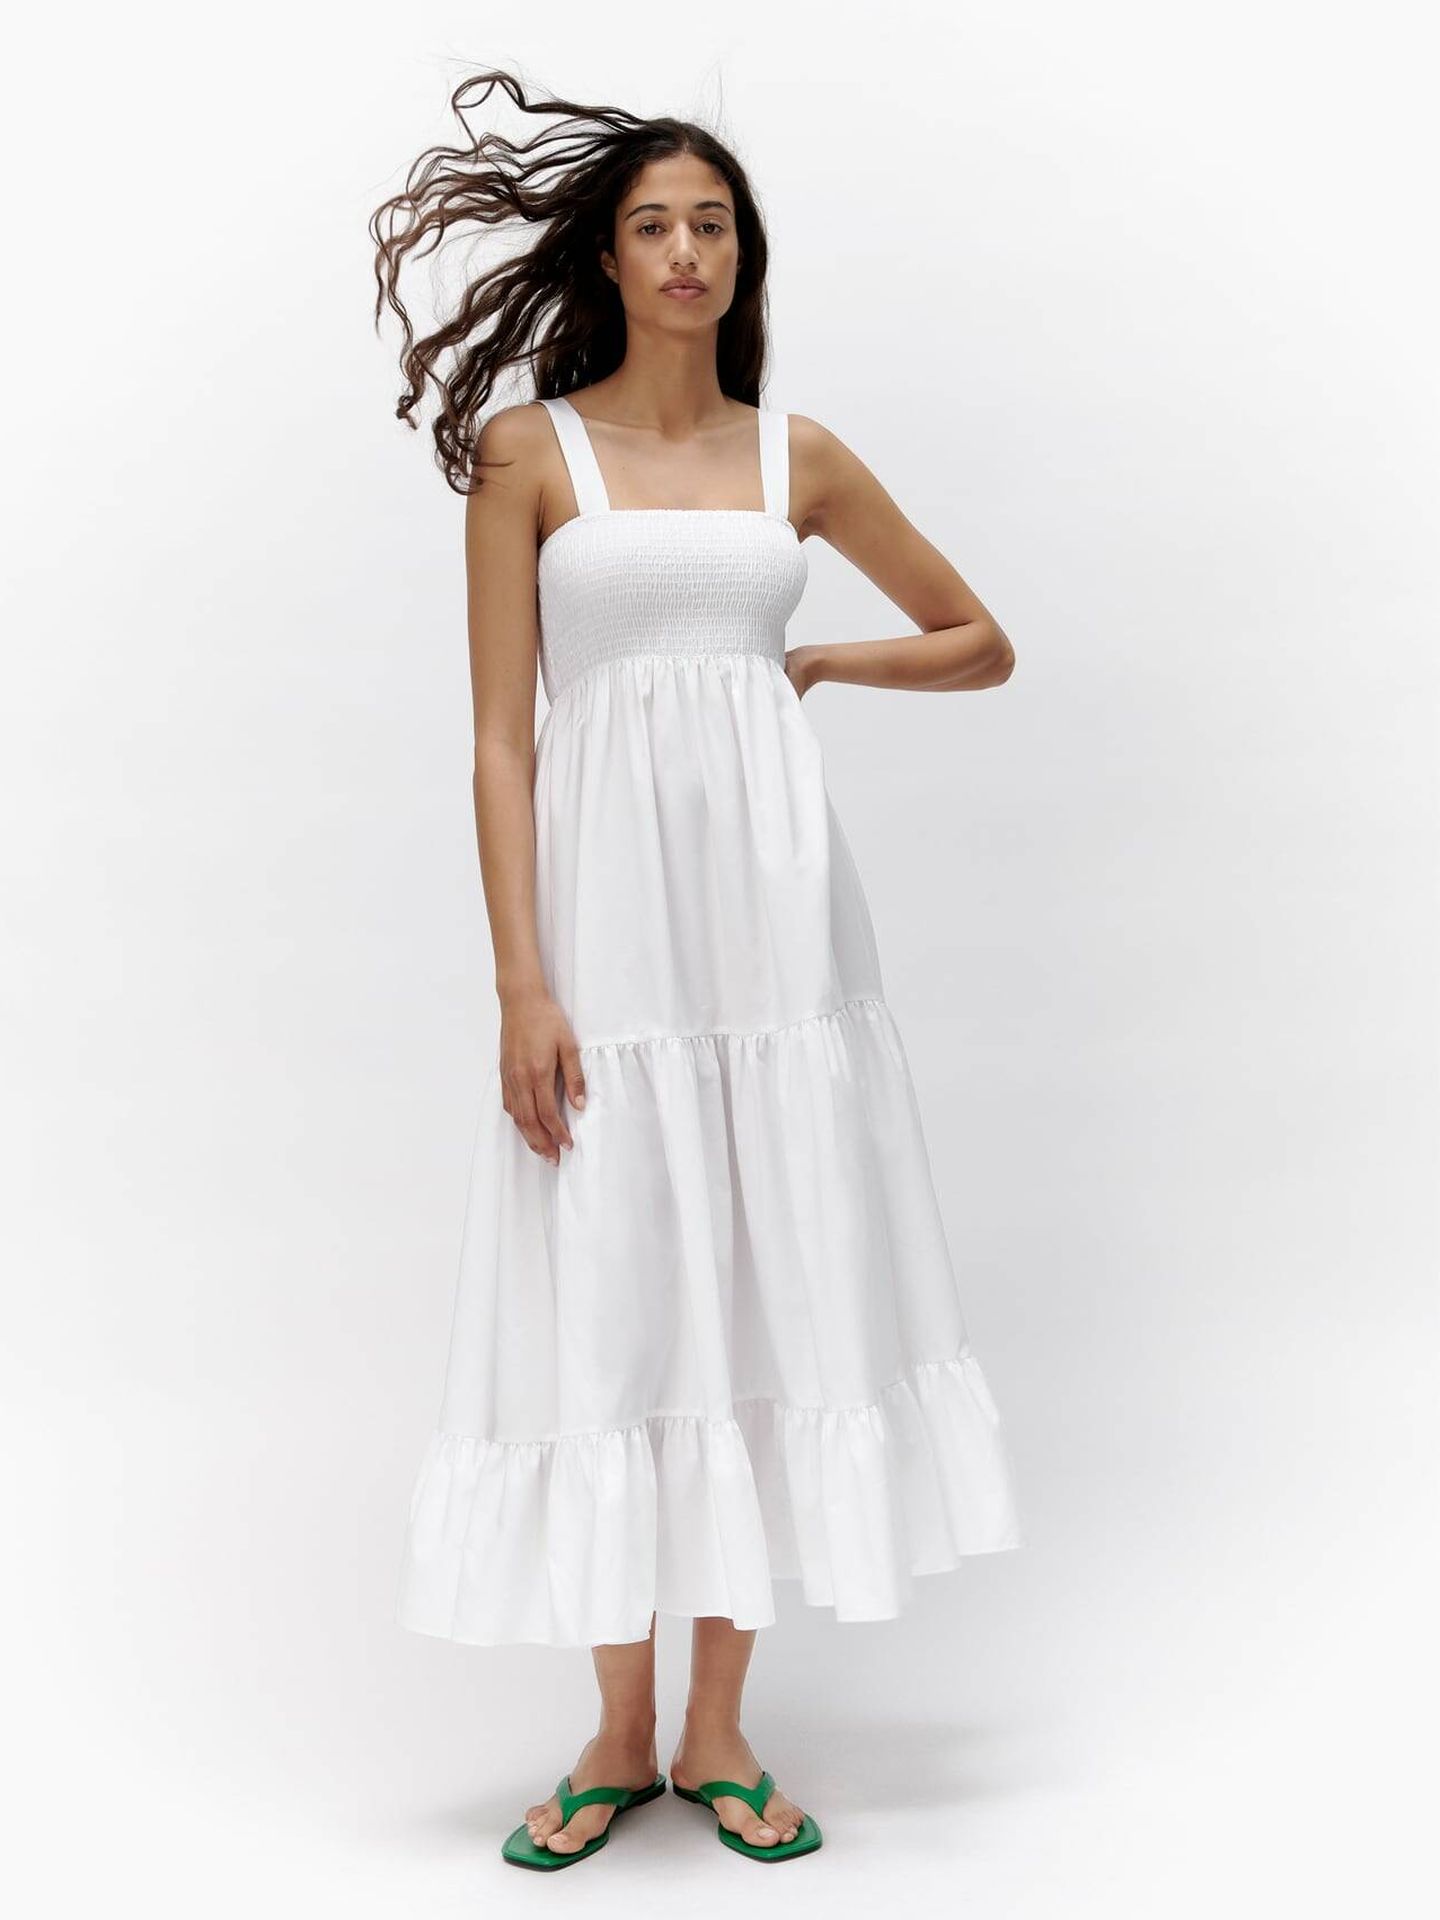 Vestido blanco. (Zara/Cortesía)